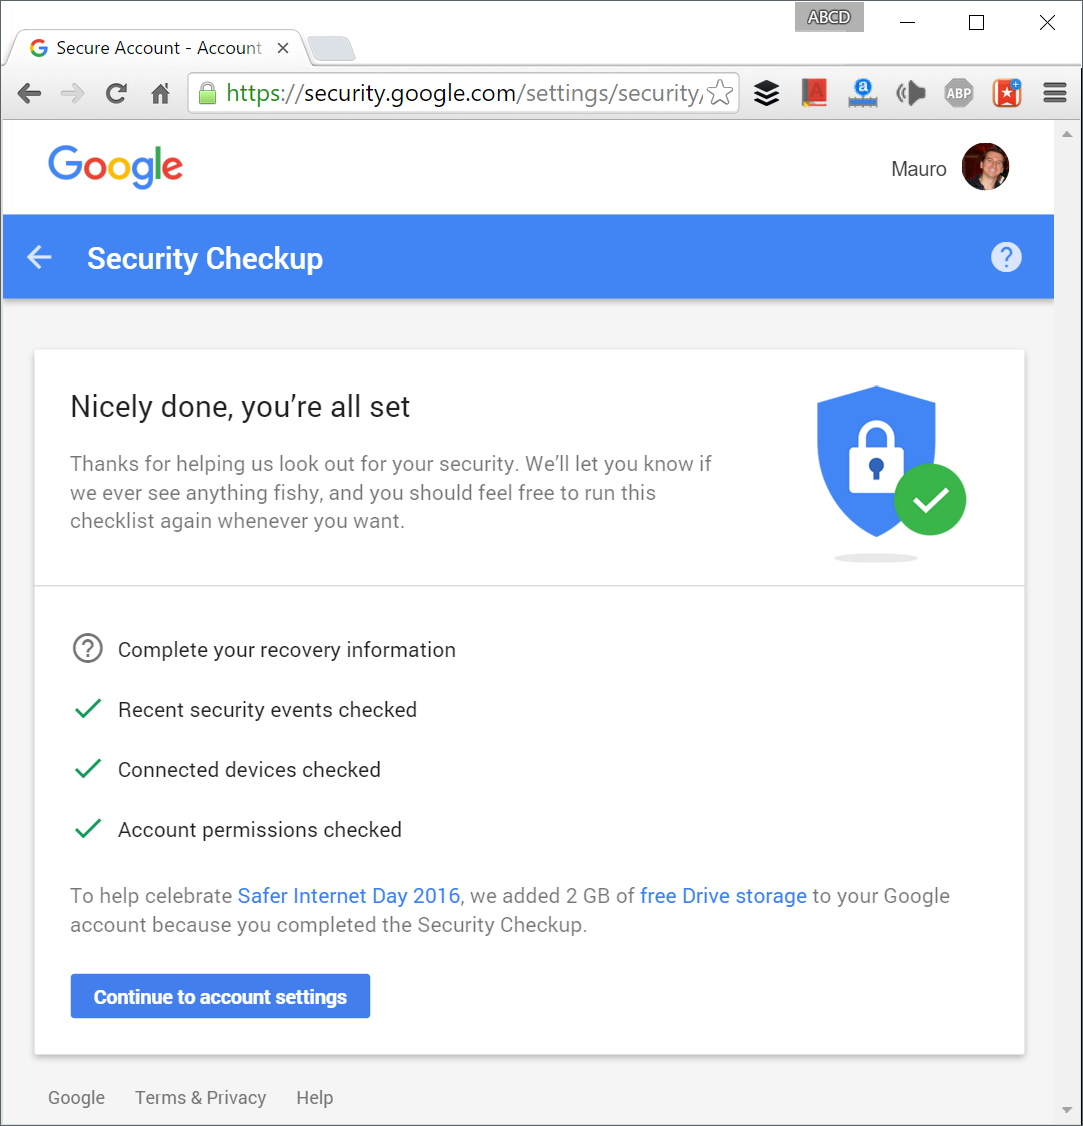 2 GB de Google Drive gratis mediante control de seguridad en el Día de Internet Seguro 2016